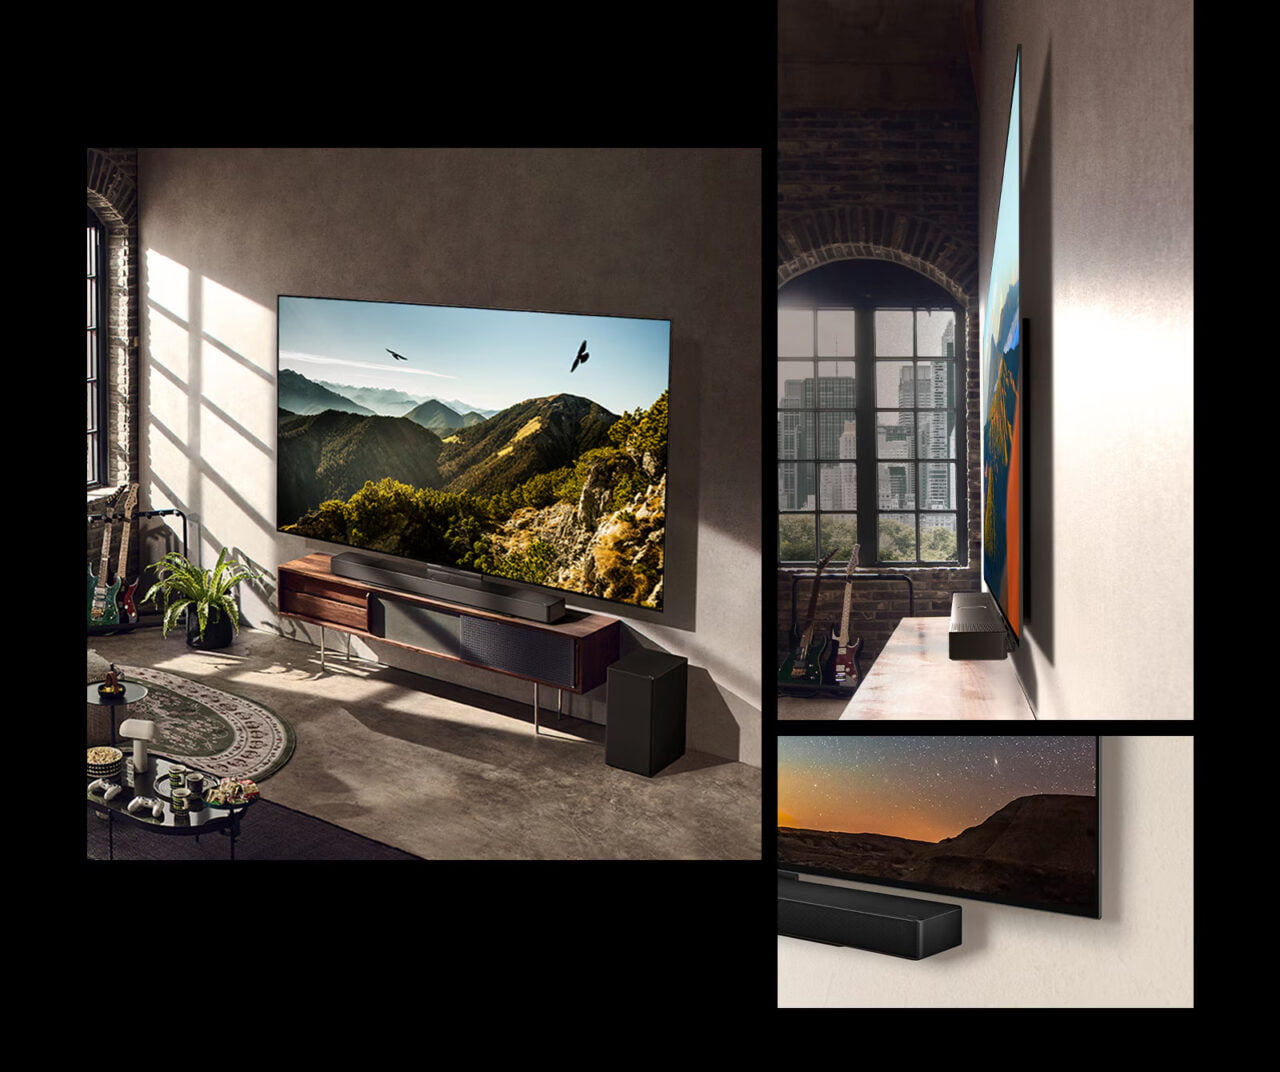 Trzy różne ujęcia nowoczesnego telewizora w różnych wnętrzach: salon z widokiem na góry na dużym ekranie, boczny widok pokazujący cienką krawędź telewizora i telewizor w innym pomieszczeniu z widokiem na gwiaździste niebo.